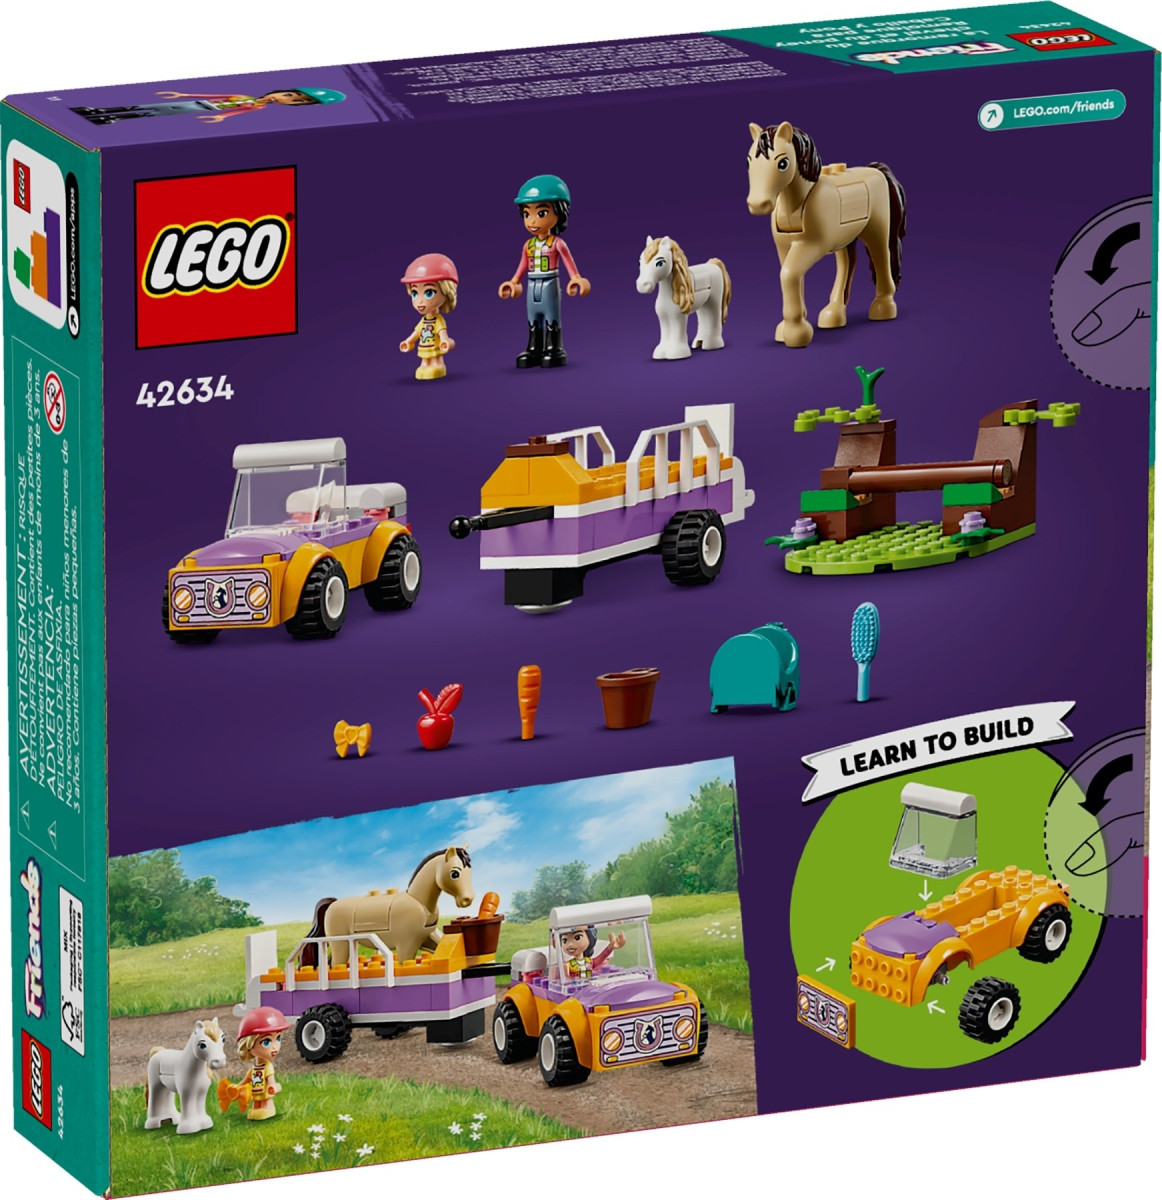 Конструктор LEGO Friends Прицеп для лошади и пони (42634)